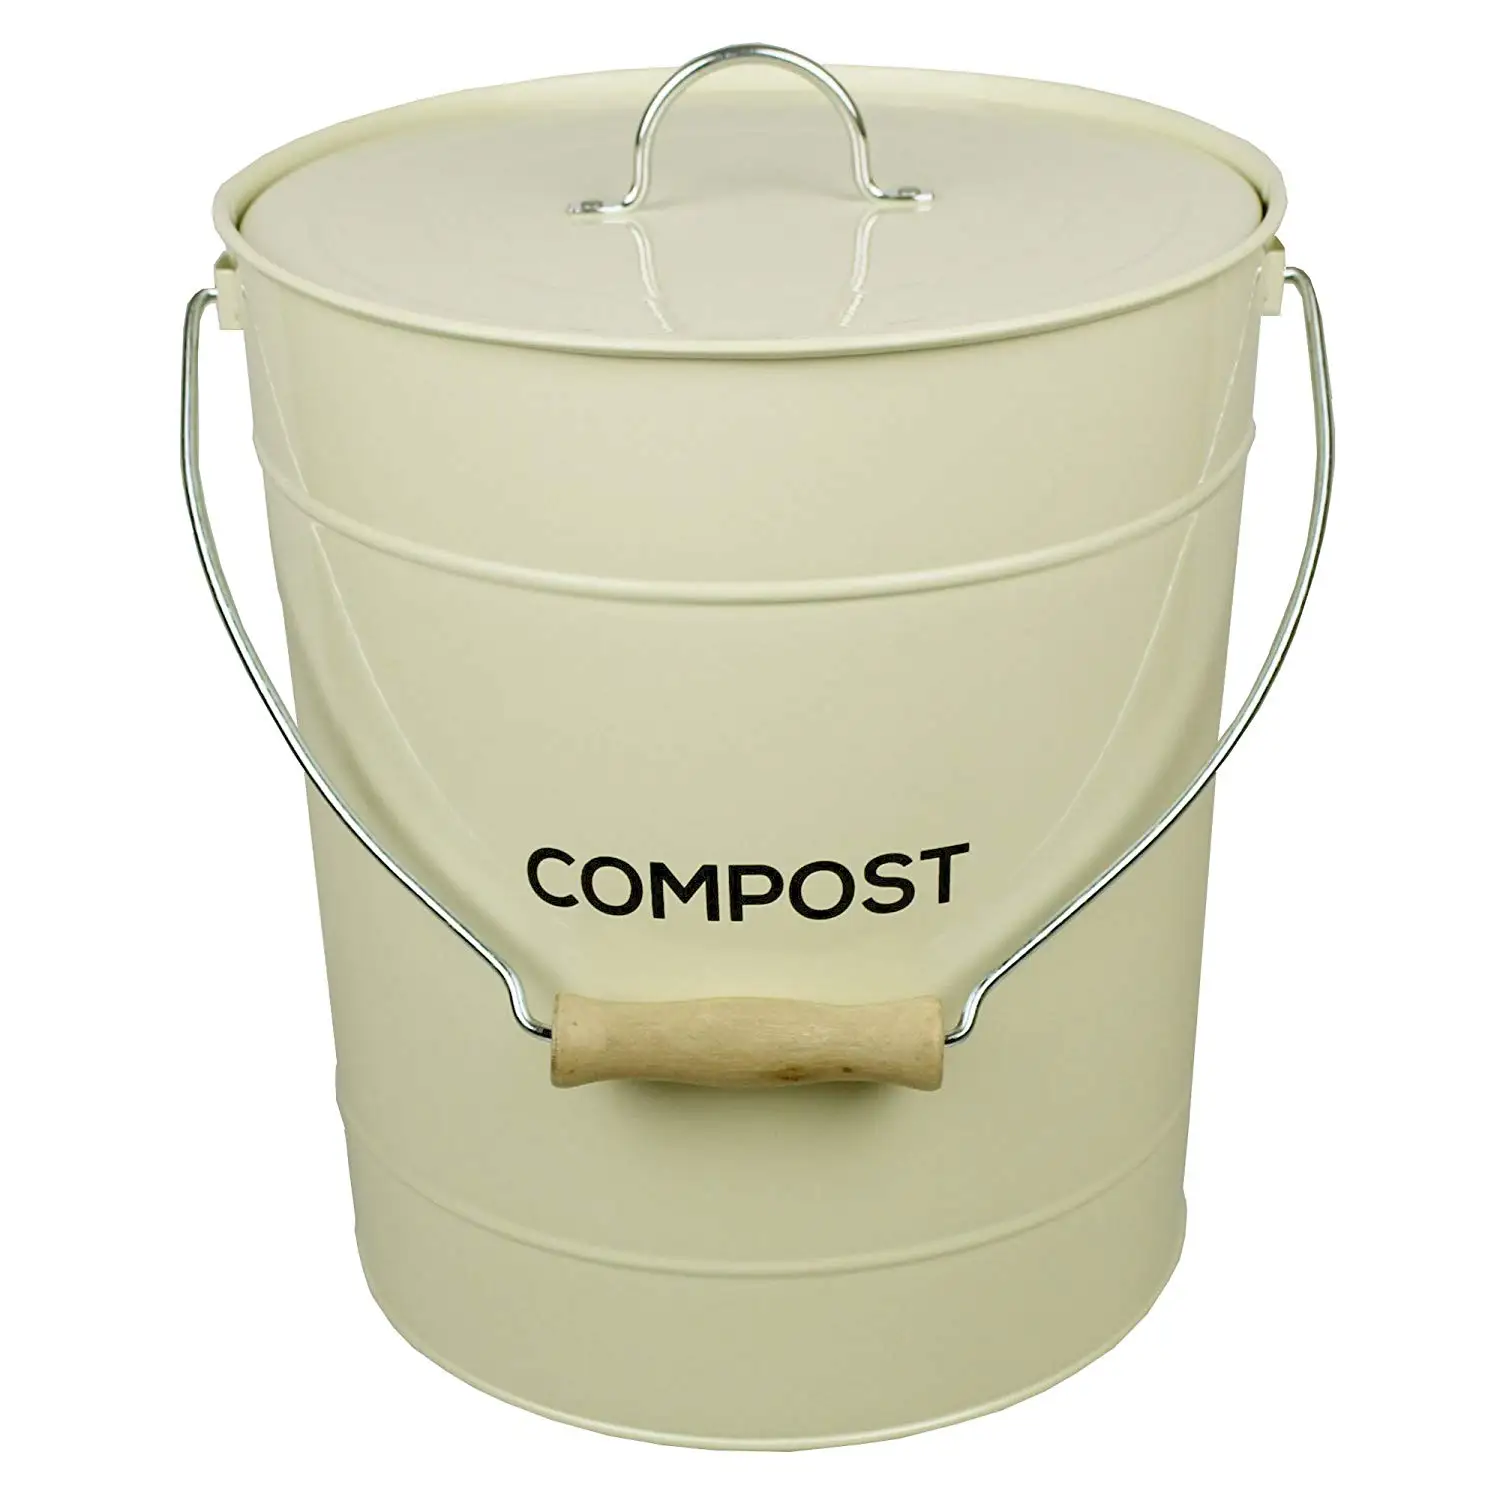 Ведро для пищевых отходов. Ведро для компостирования пищевых отходов. Эм-компостер для пищевых отходов. Эм ведро контейнер для компоста из пищевых отходов. Ведро Compost.